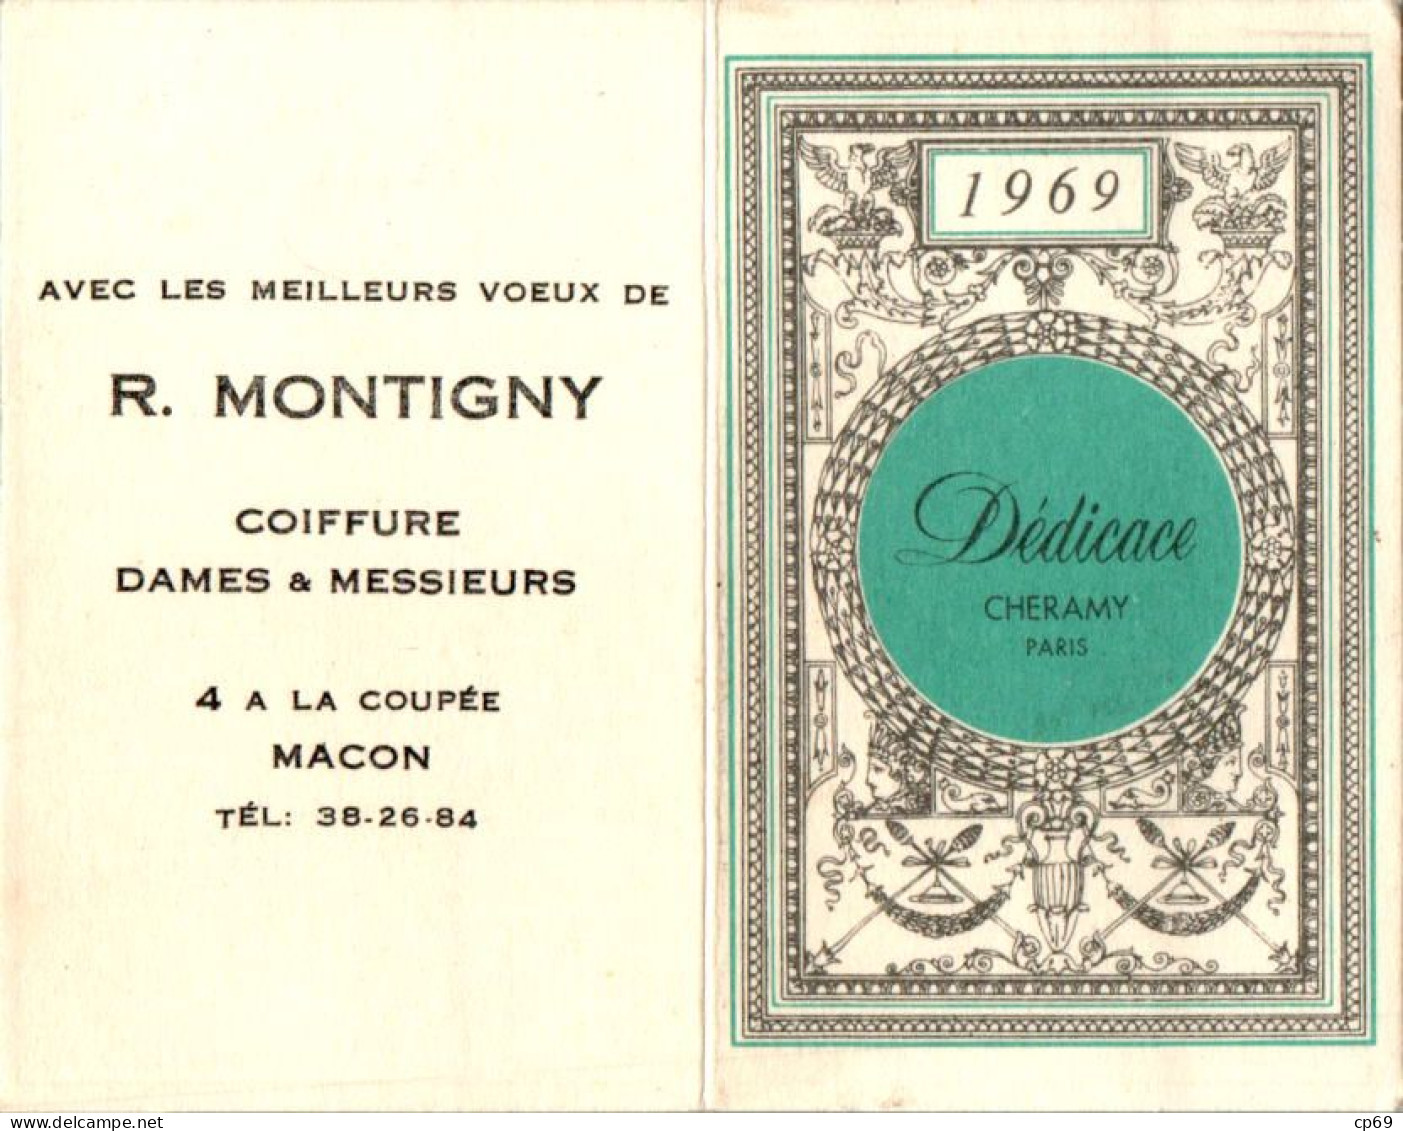 Calendrier De Poche 1969 Parfum Dédicace Cheramy à Paris En TB.Etat - Tamaño Pequeño : 1961-70